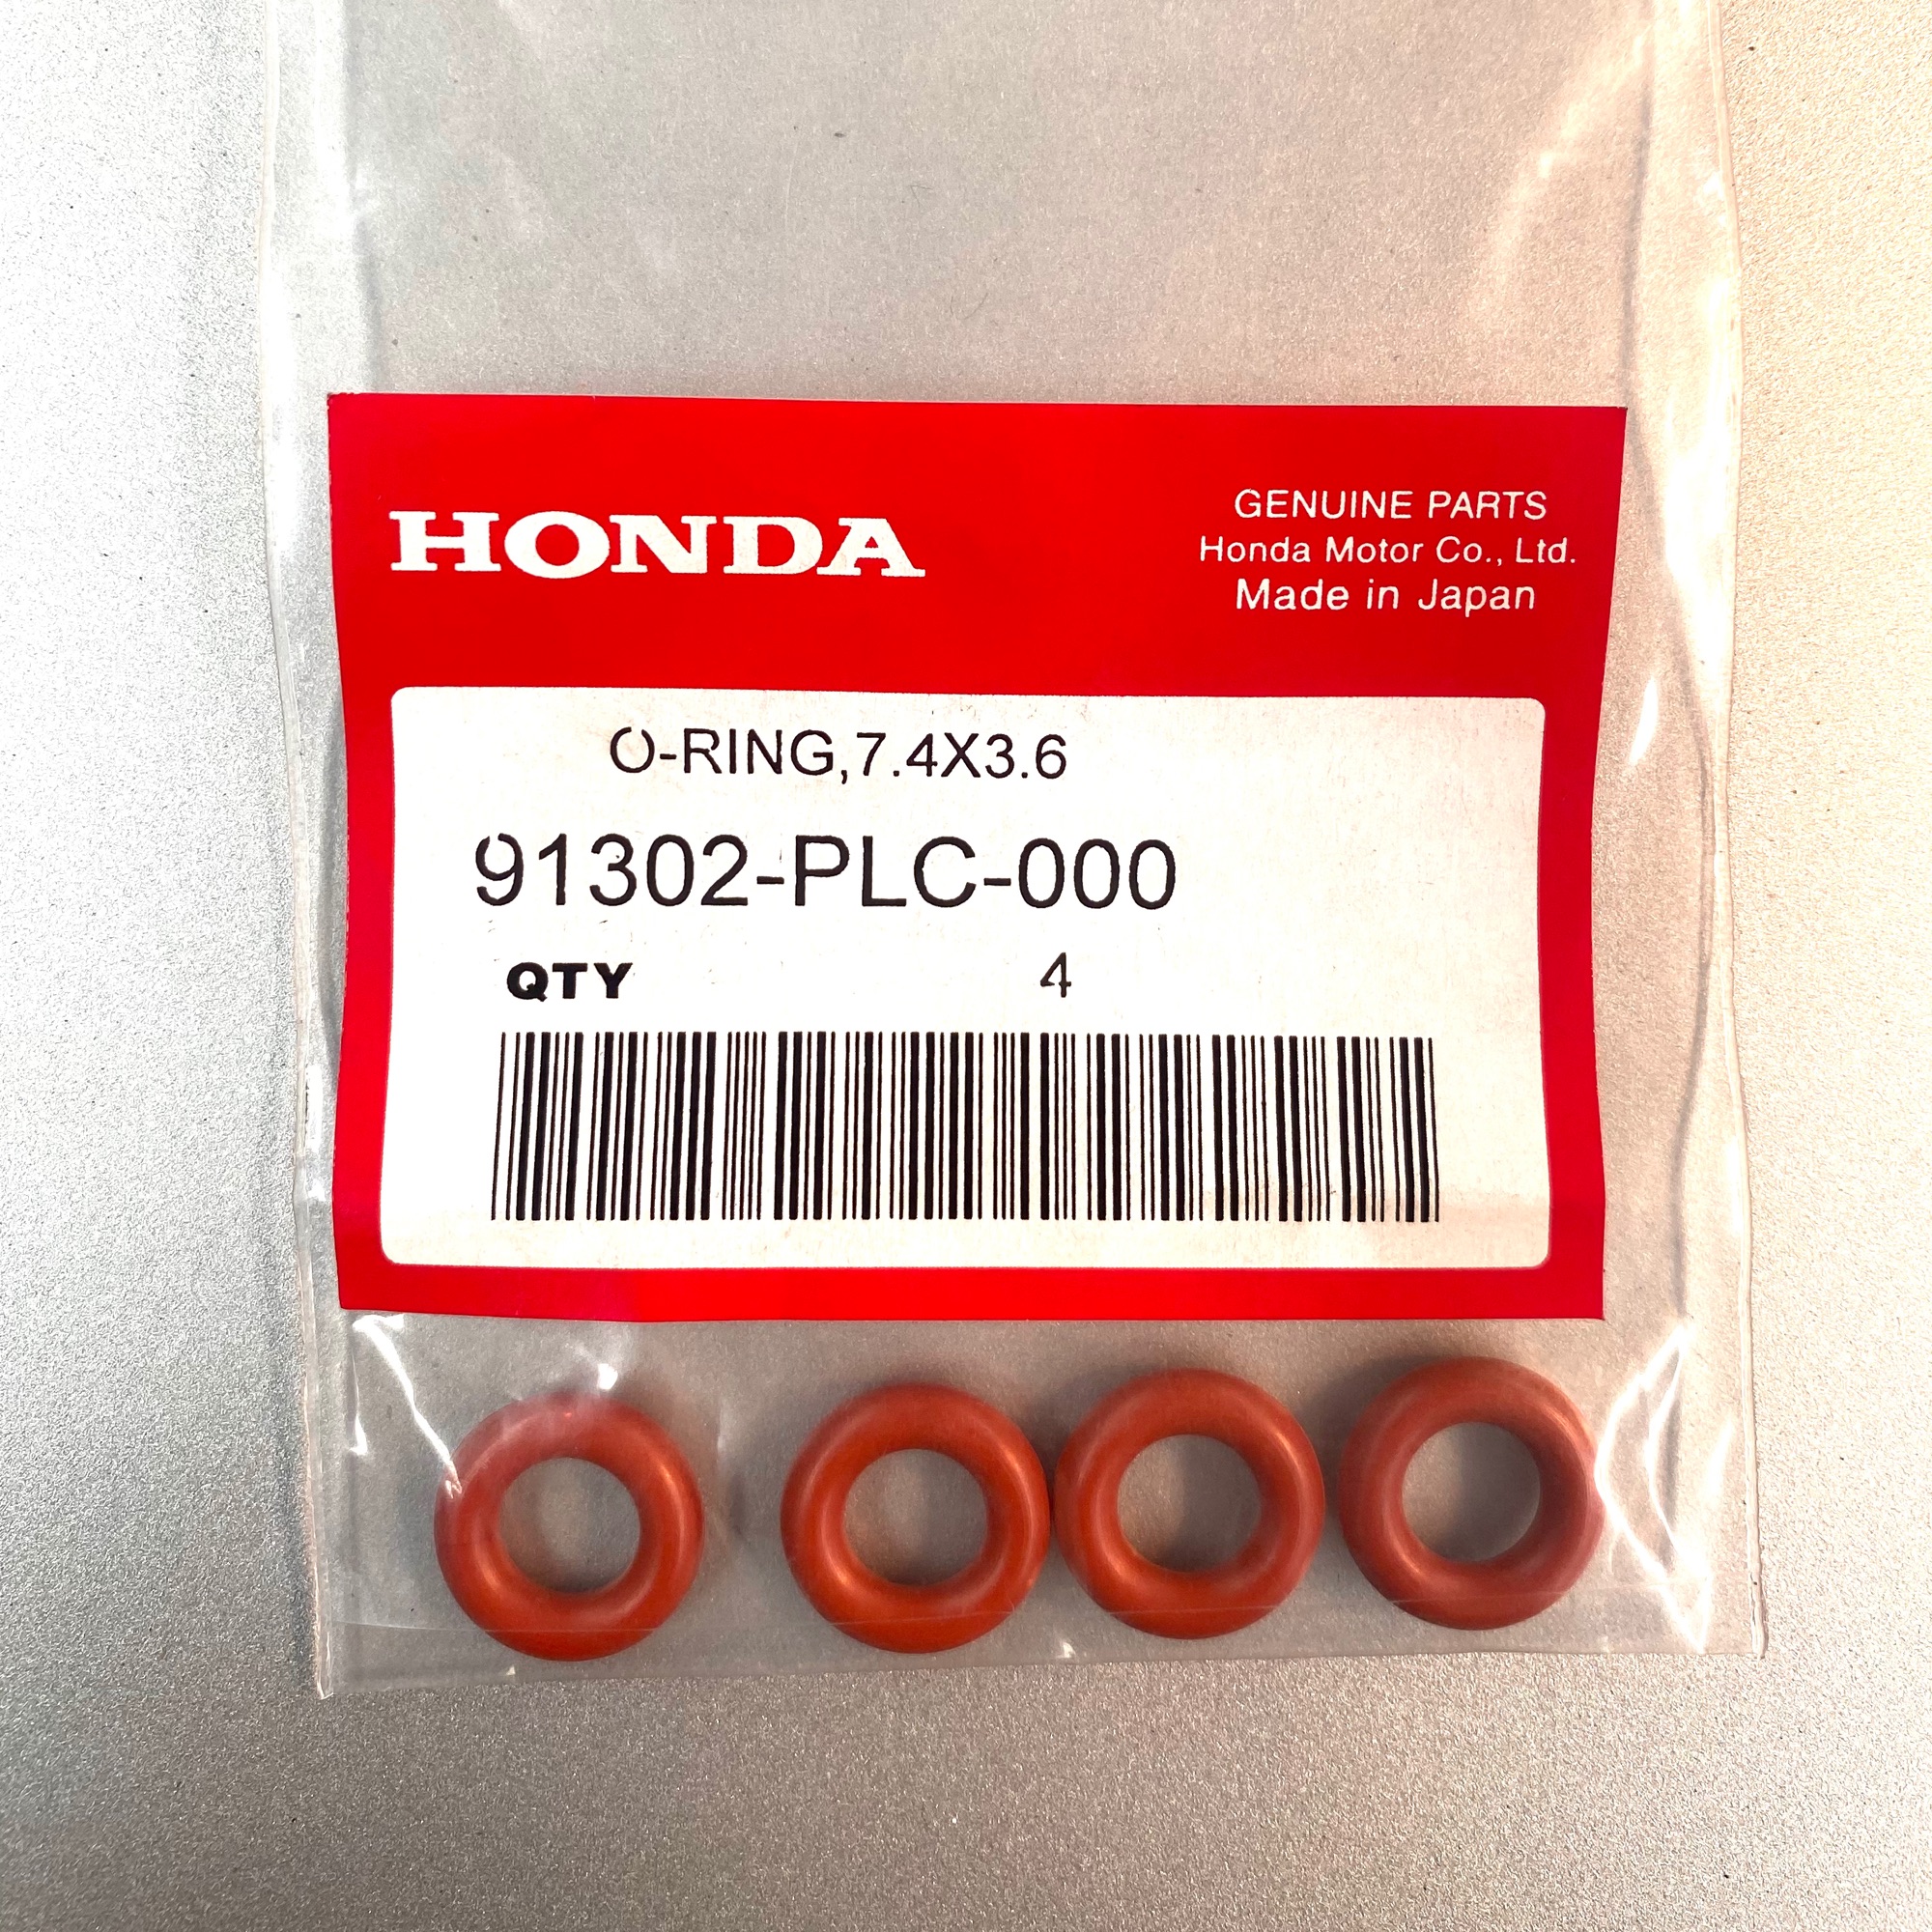 โอริงหัวฉีด Honda แท้ สีส้ม ใช้ได้หลายรุ่น ขนาด 14.5mmx7.4mmx3.6mm ใน 1 ชุด มี 4 ชิ้น